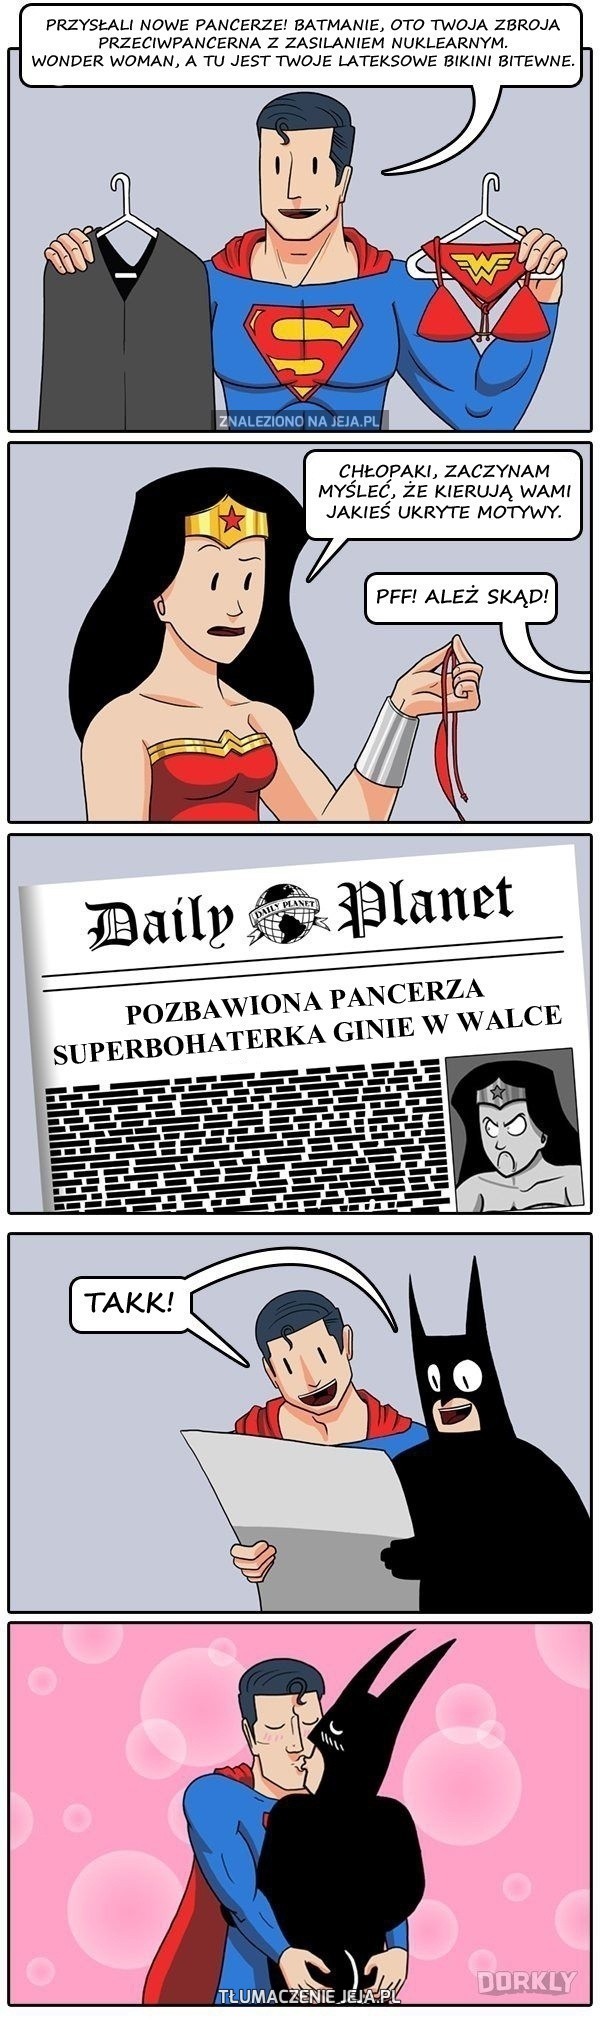 Oto dlaczego Wonder Woman nie ma pancerza